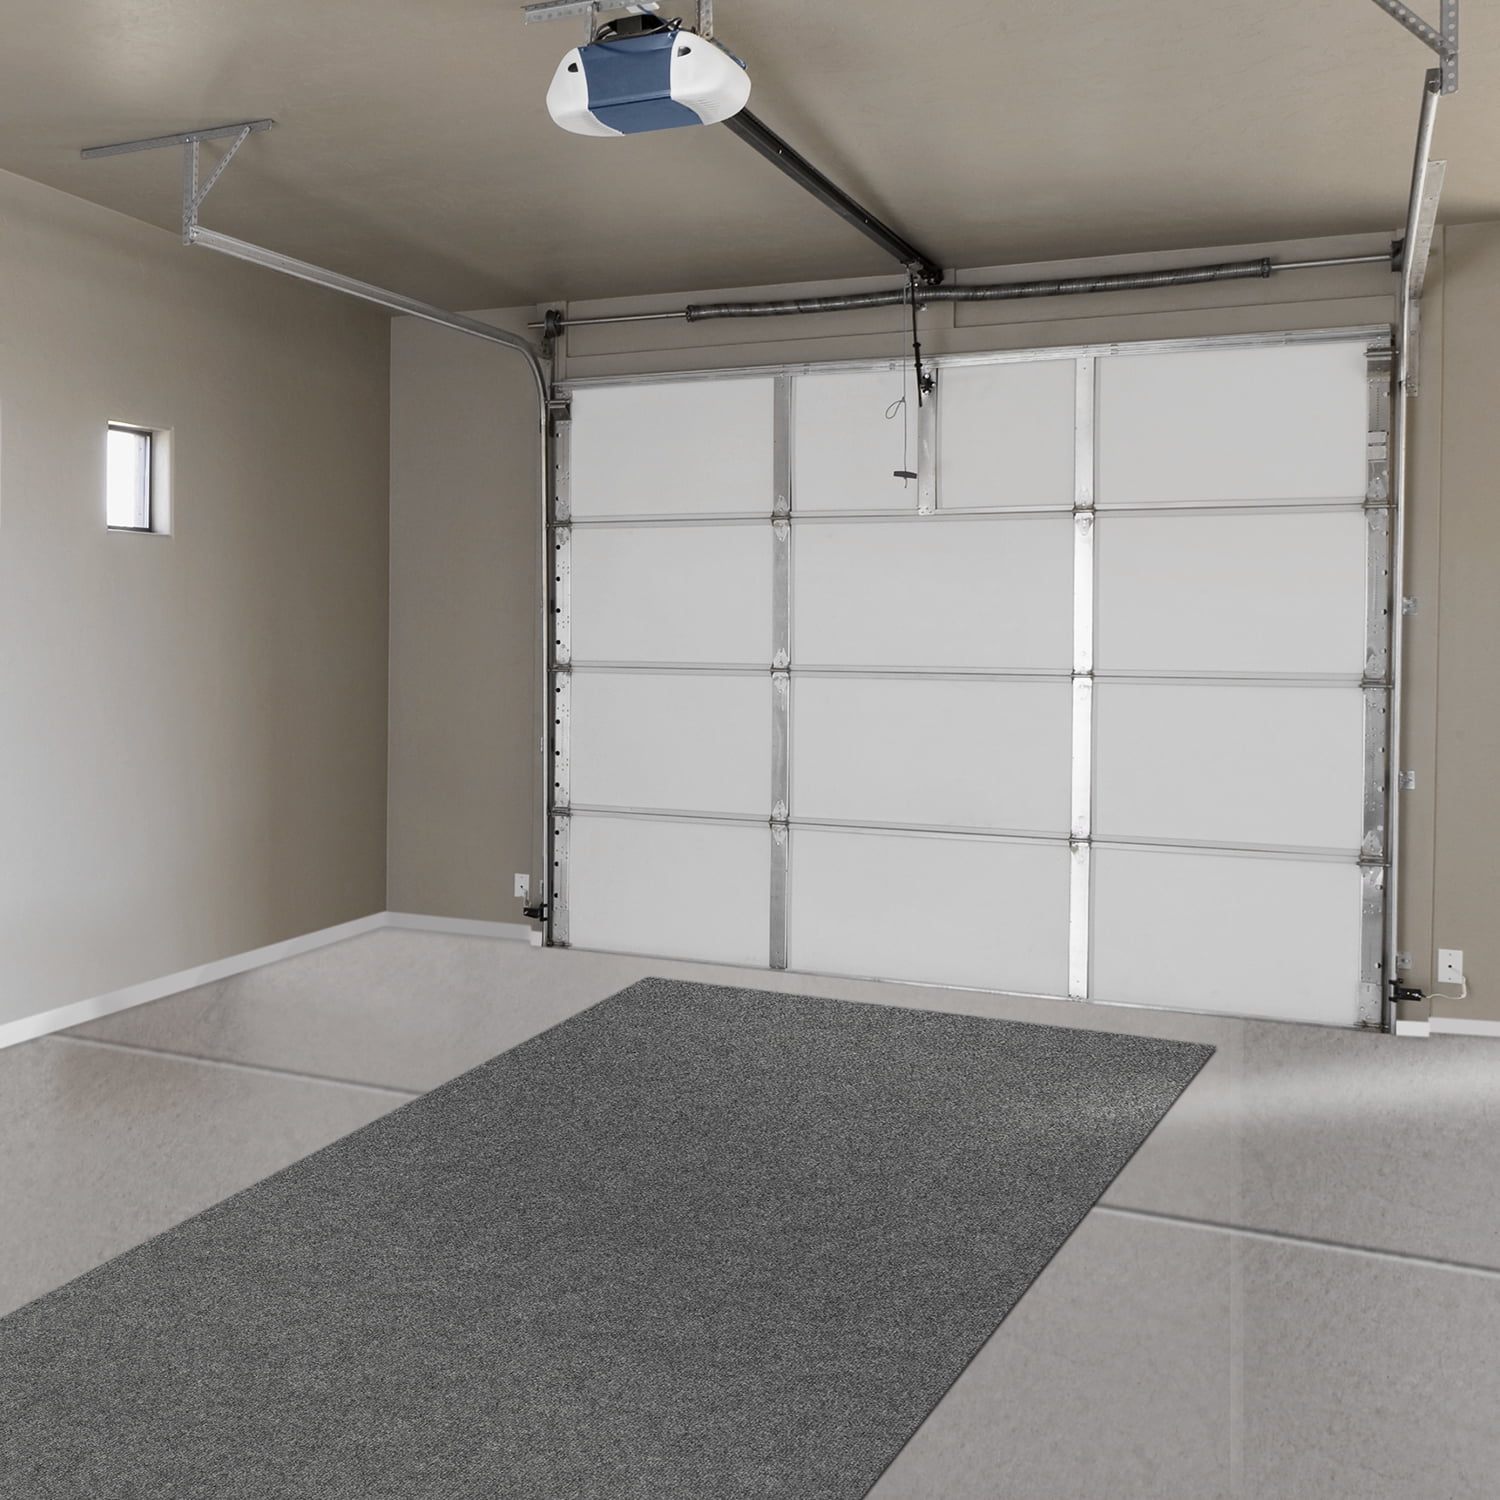 Garage Carpet Installation Video 